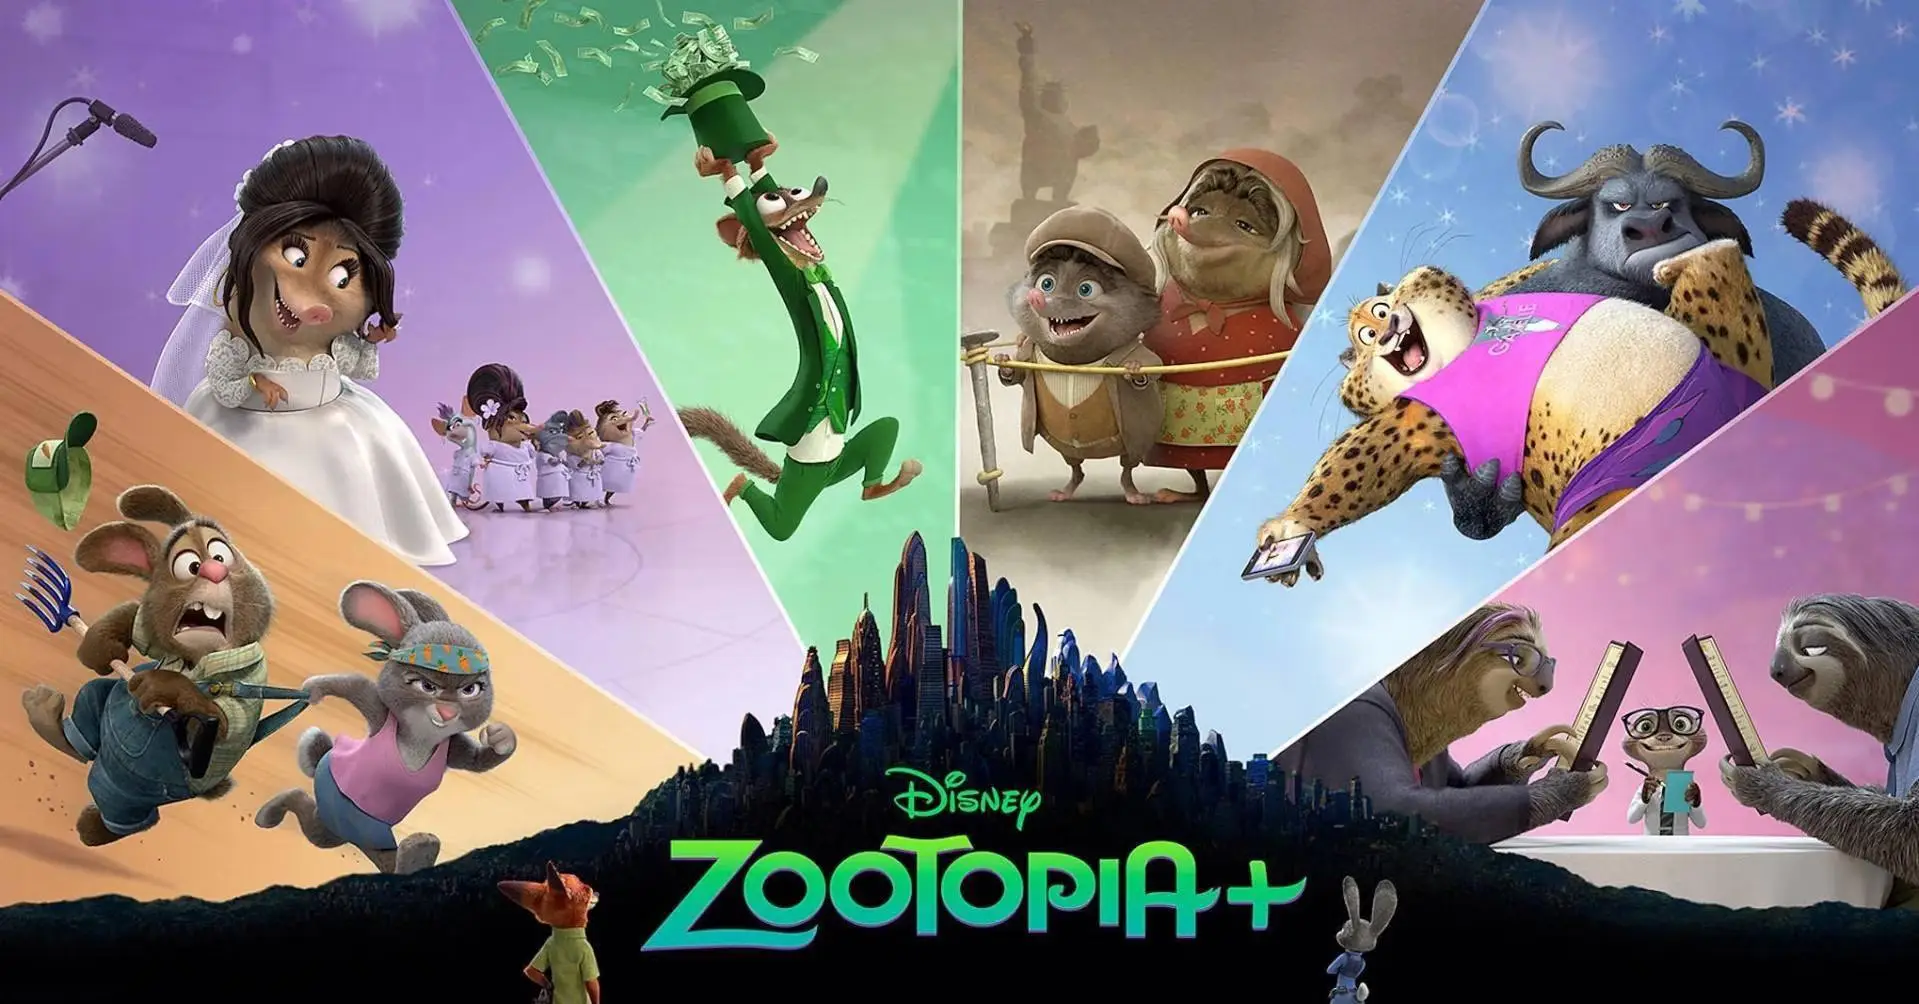 《疯狂动物城+》将于11月9日上线Disney+